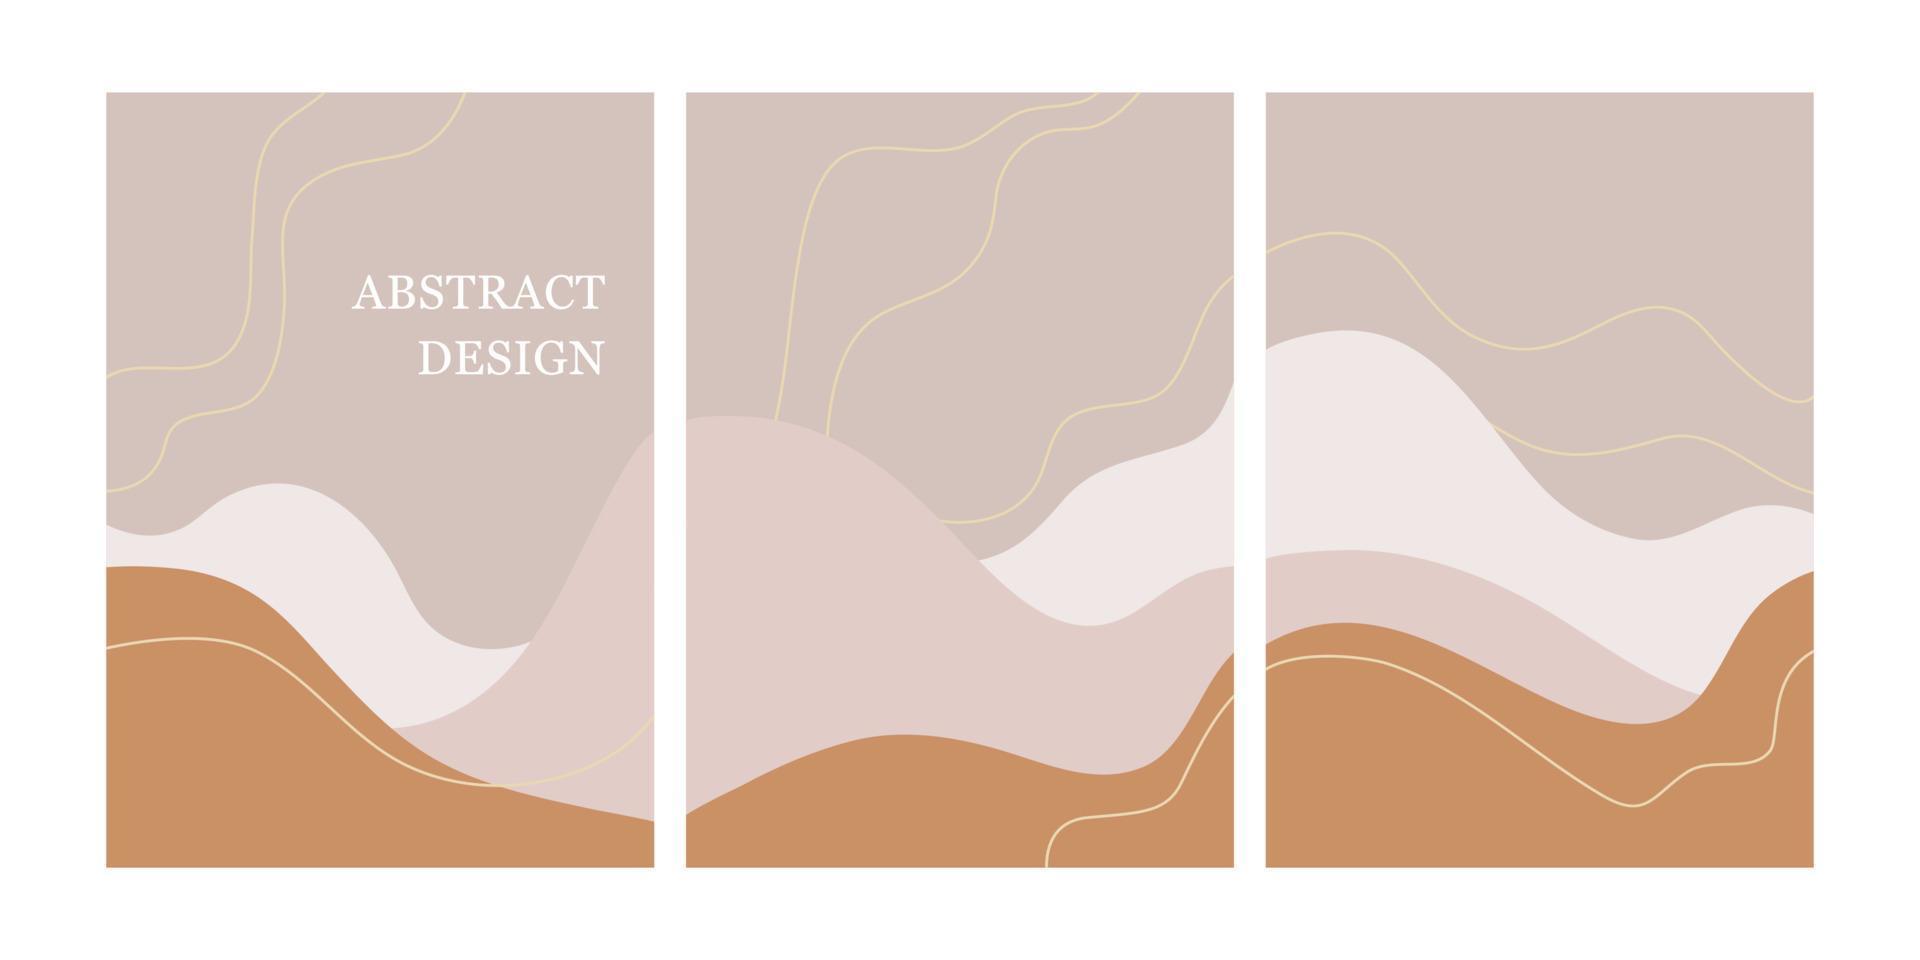 Reihe moderner Designvorlagen mit abstrakten organischen Formen in Pastellfarben. minimaler stilvoller hintergrund für broschüren, flyer, banner, poster und branding-design. Vektor-Illustration vektor